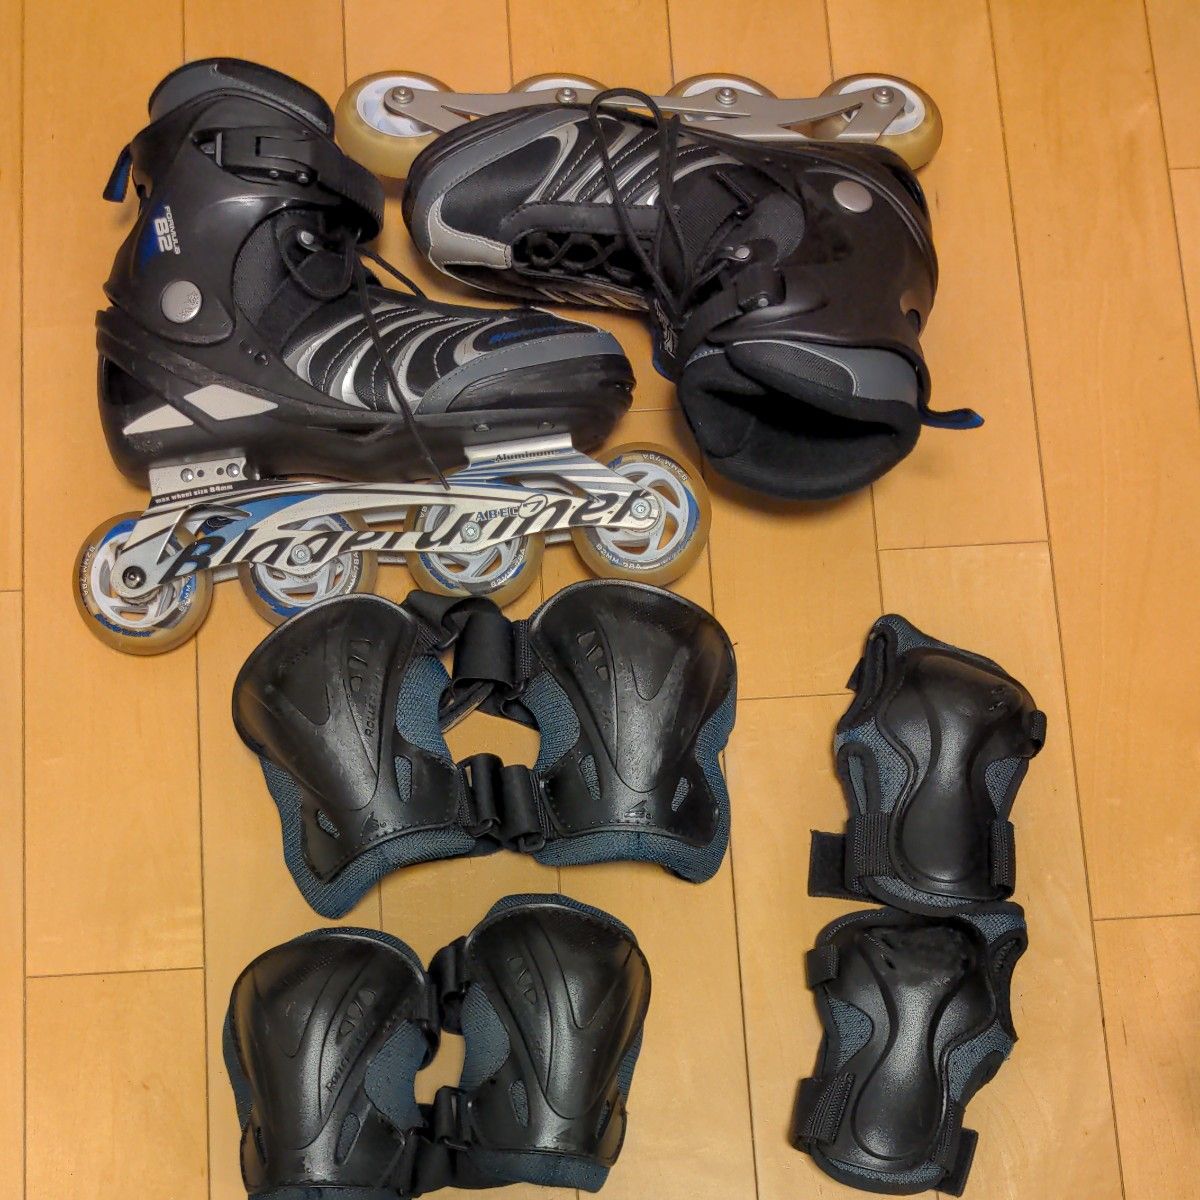 Bladerunner FORMULA82 インラインスケート 27.0cm   プロテクターとバッグとヘルメットのセット  